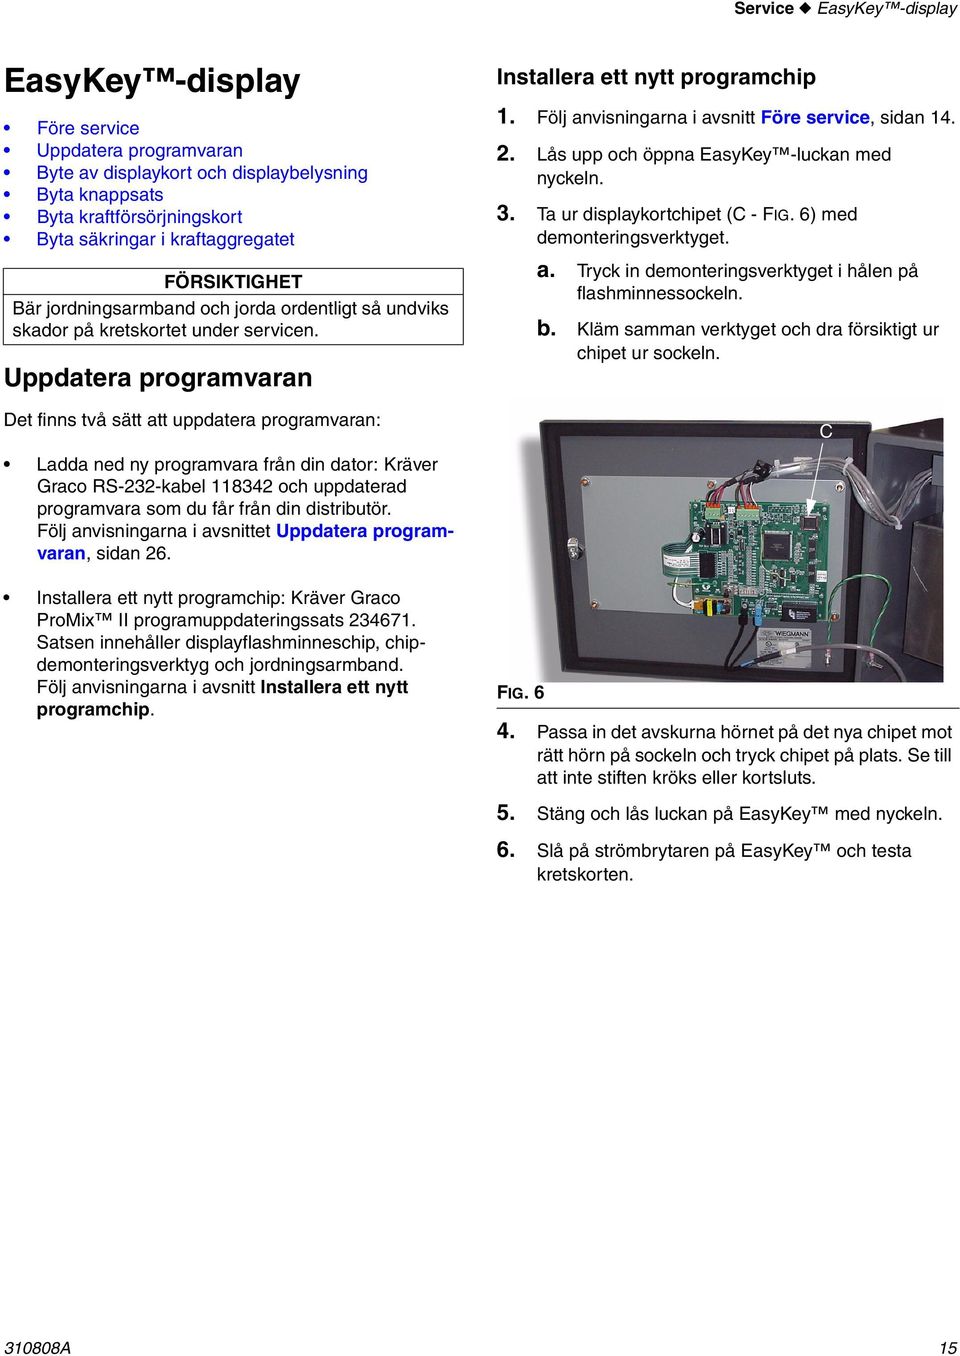 Uppdatera programvaran Det finns två sätt att uppdatera programvaran: Ladda ned ny programvara från din dator: Kräver Graco RS-232-kabel 8342 och uppdaterad programvara som du får från din